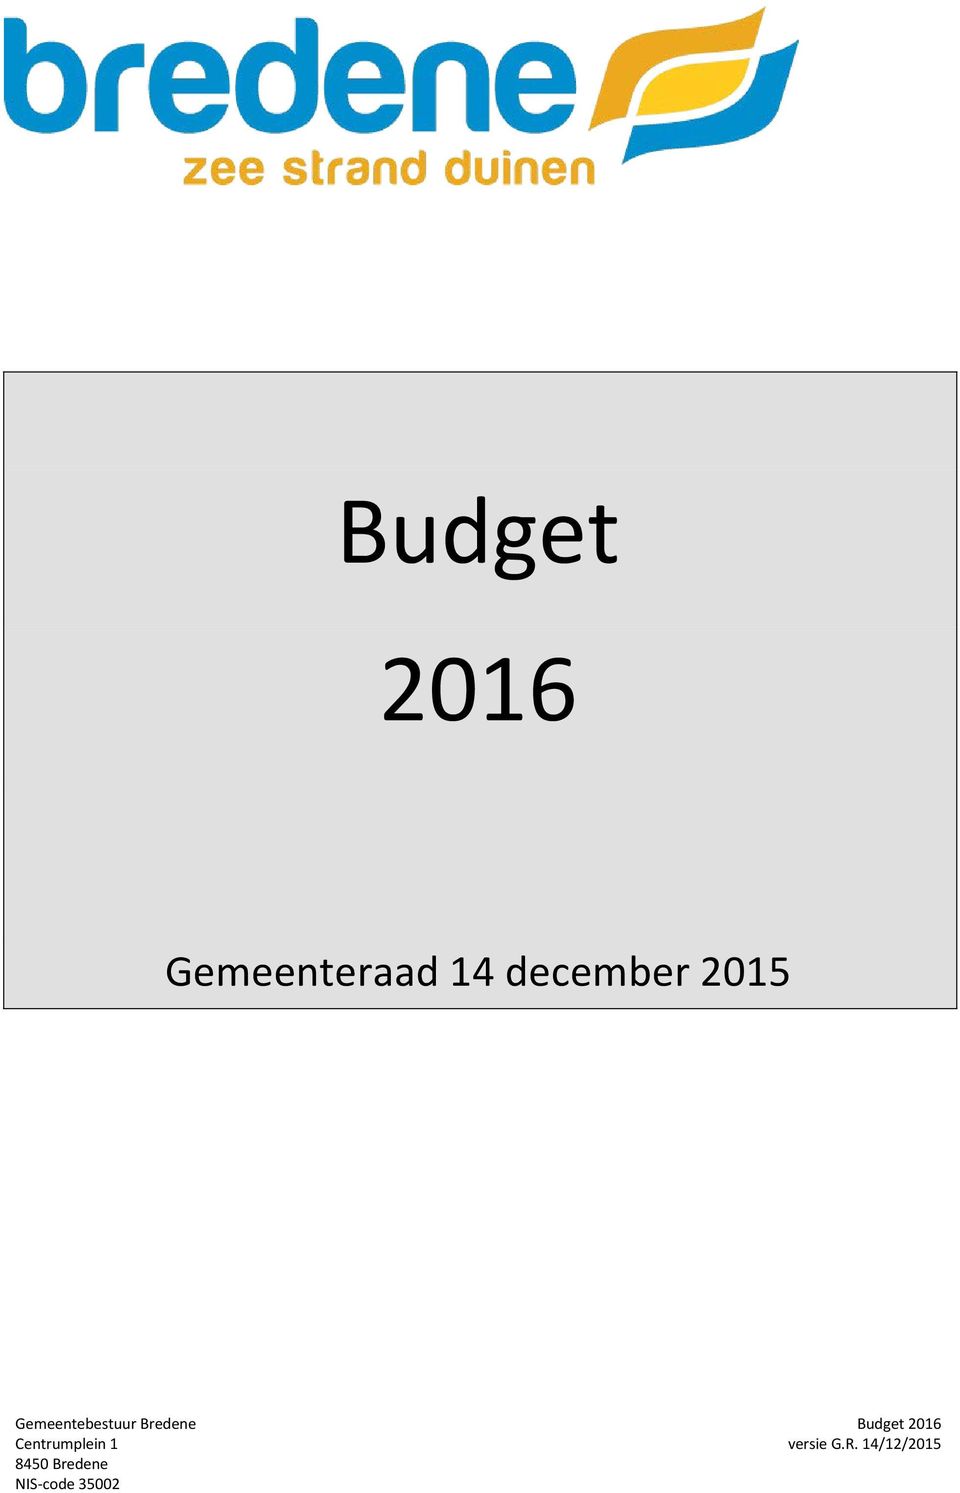 Bredene Budget 2016 Centrumplein 1